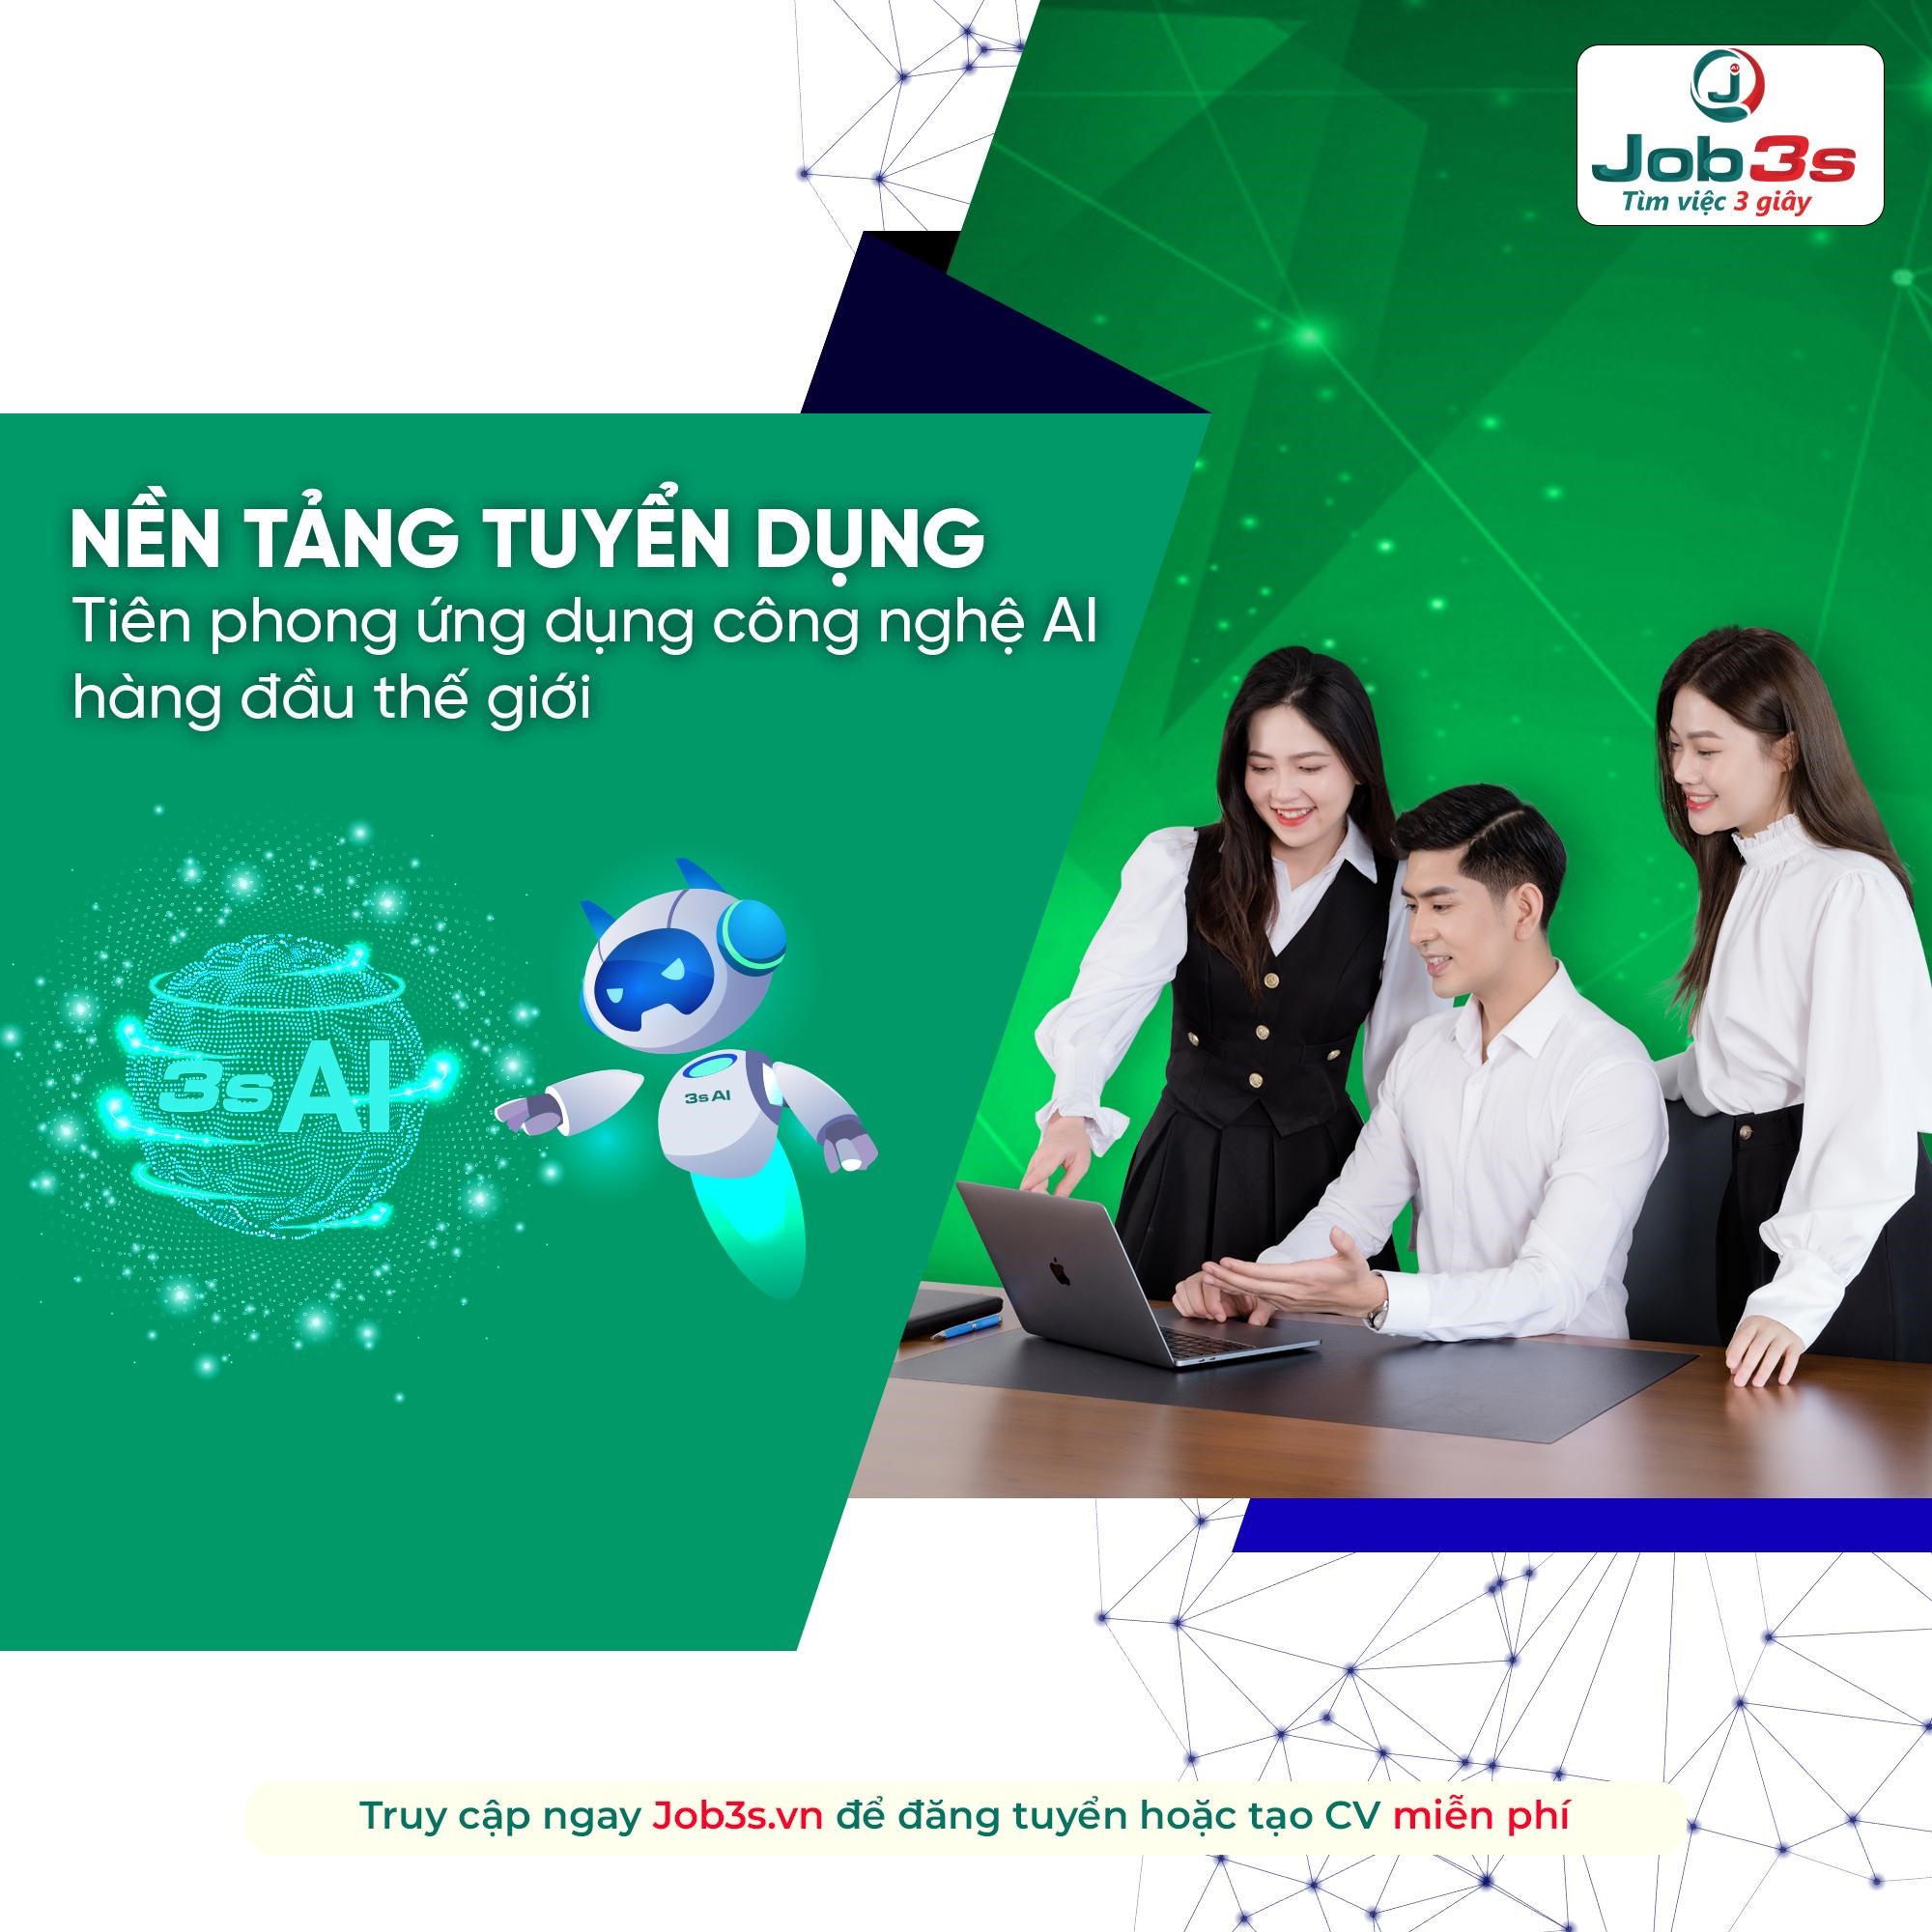 Cần biết - Nền tảng tuyển dụng Job3s.vn của CEO Tony Vũ được vinh danh gây bão mạng xã hội với lượng người dùng tăng chóng mặt đến việc giành giải thưởng lớn Châu Á (Hình 3).